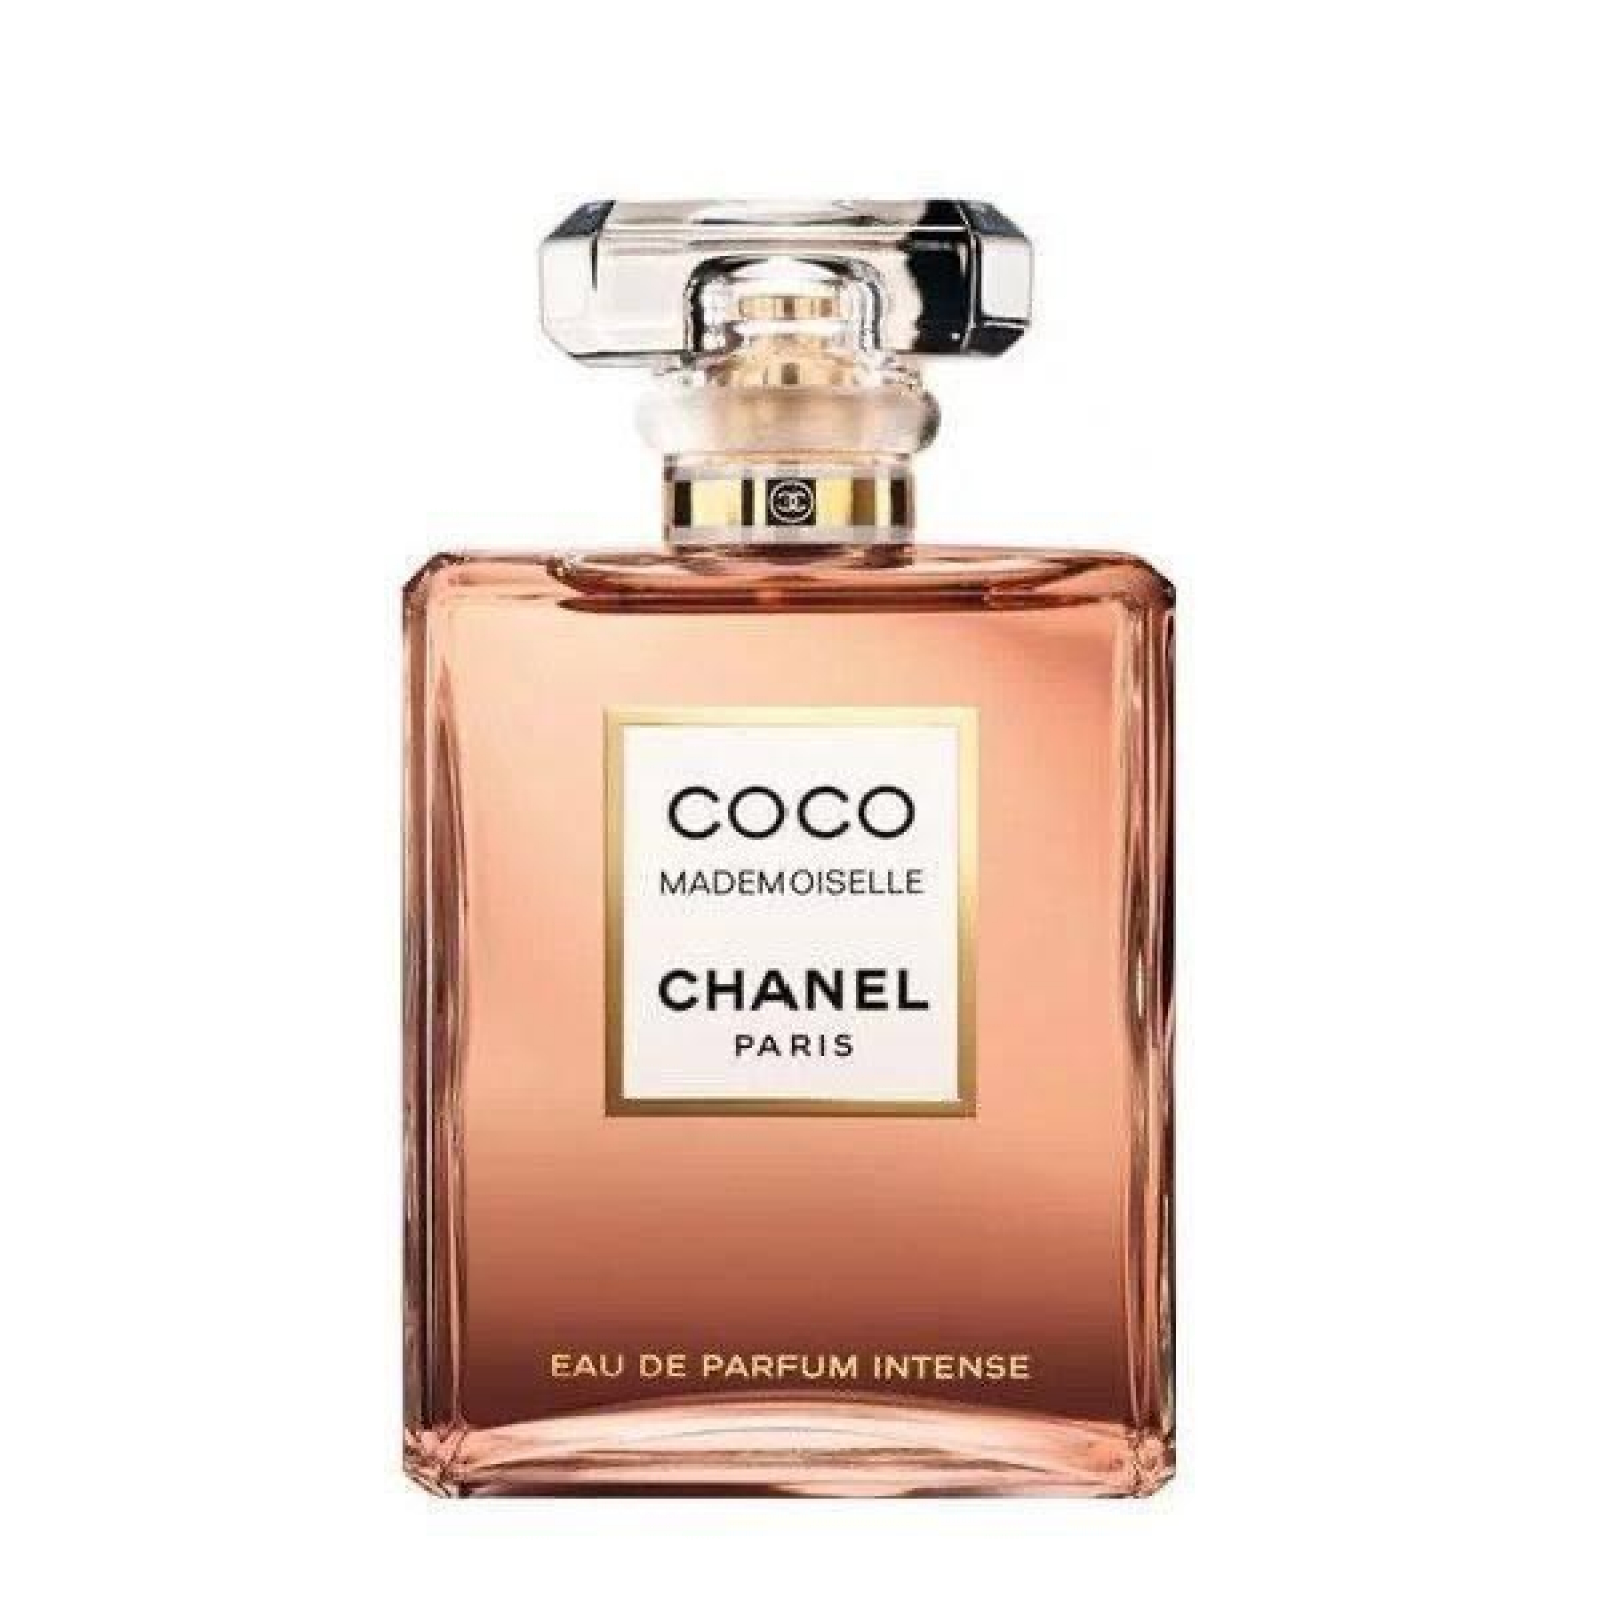 Chanel  COCO MADEMOISELLE  Les Essentiels Pour La Soirée Essentials For  The Evening  Luxury Fragrances  Avvenice